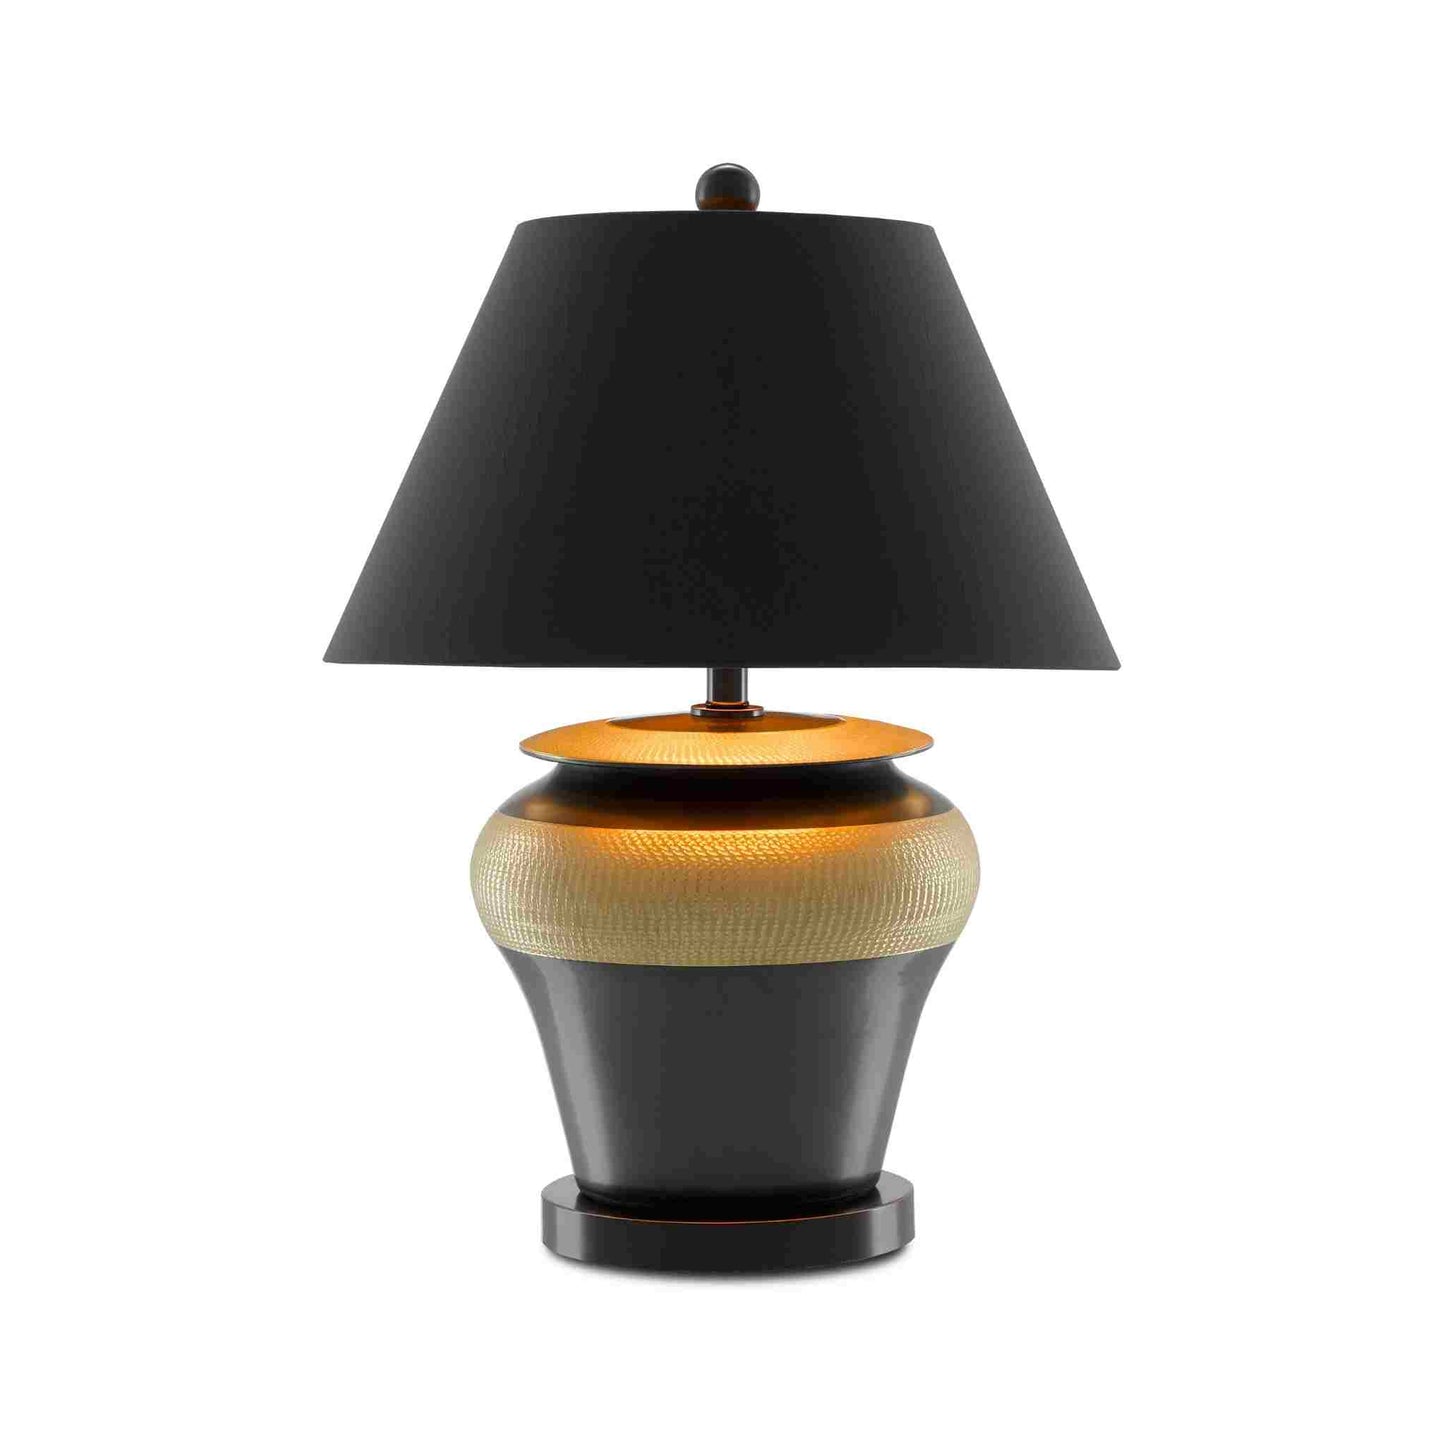 Winkworth Black Table Lamp